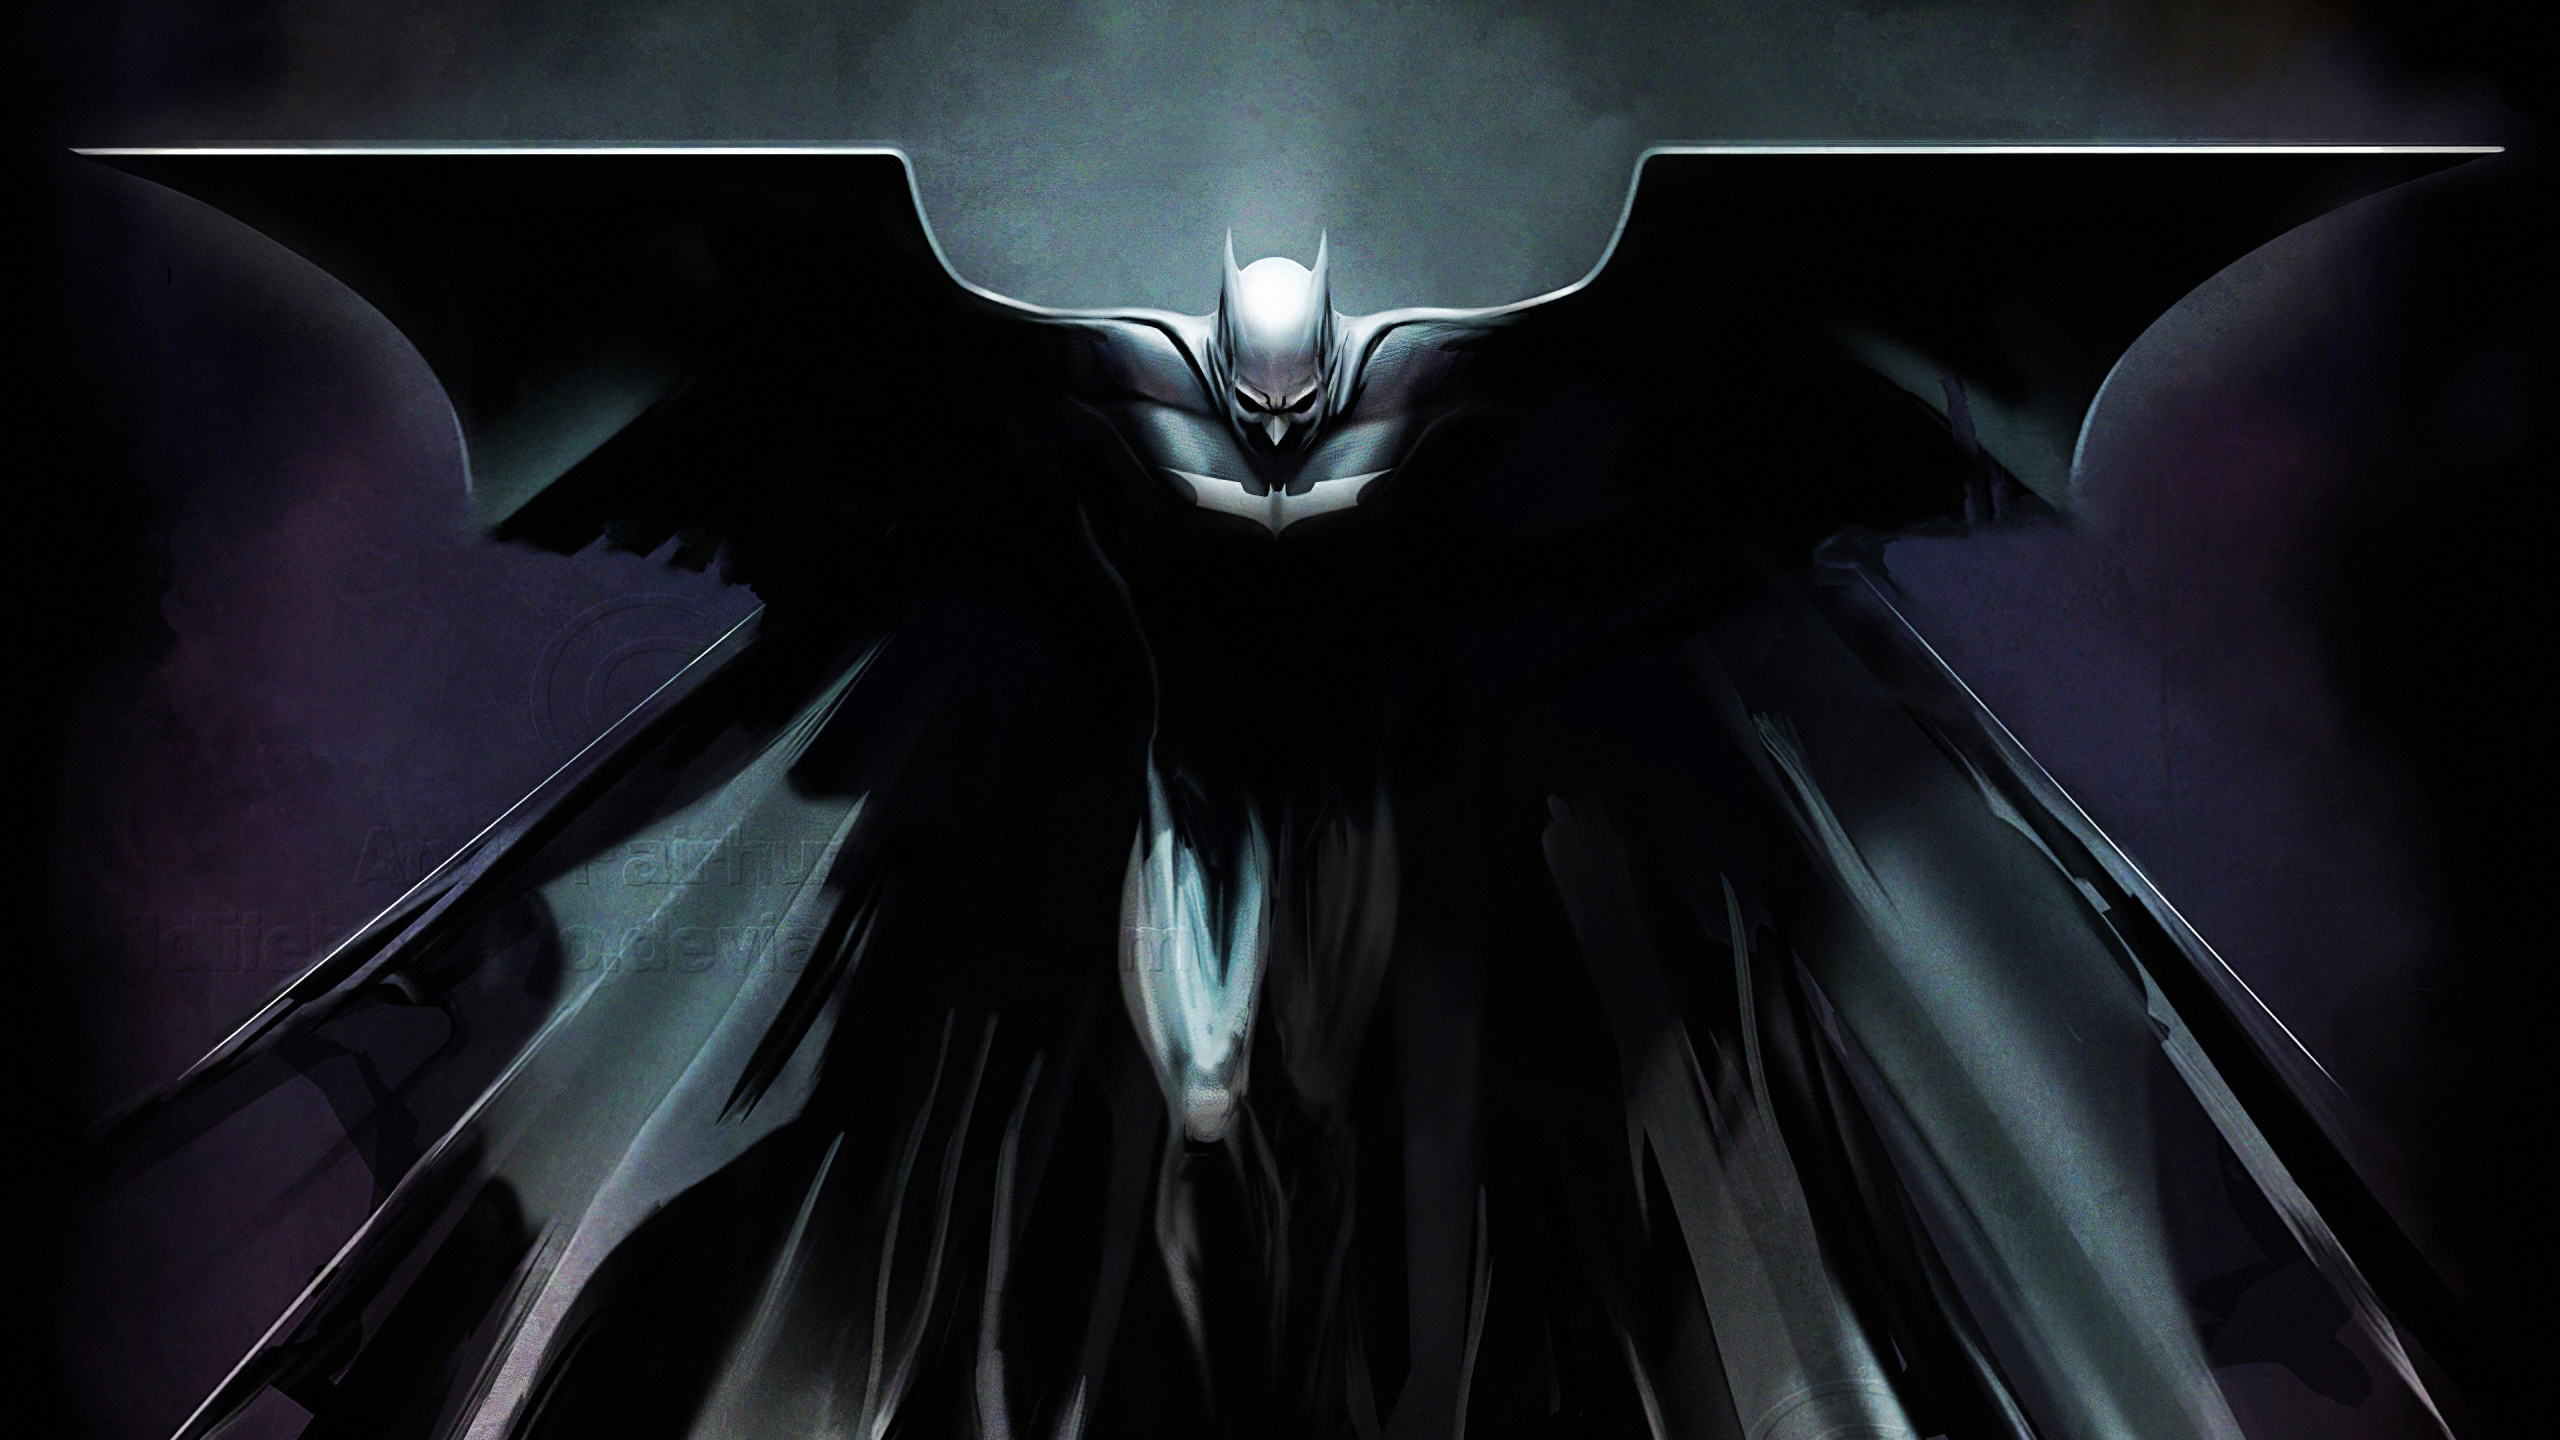 蝙蝠侠, 黑暗骑士的三部曲, 艺术, 分形技术, 翼 壁纸 2560x1440 允许